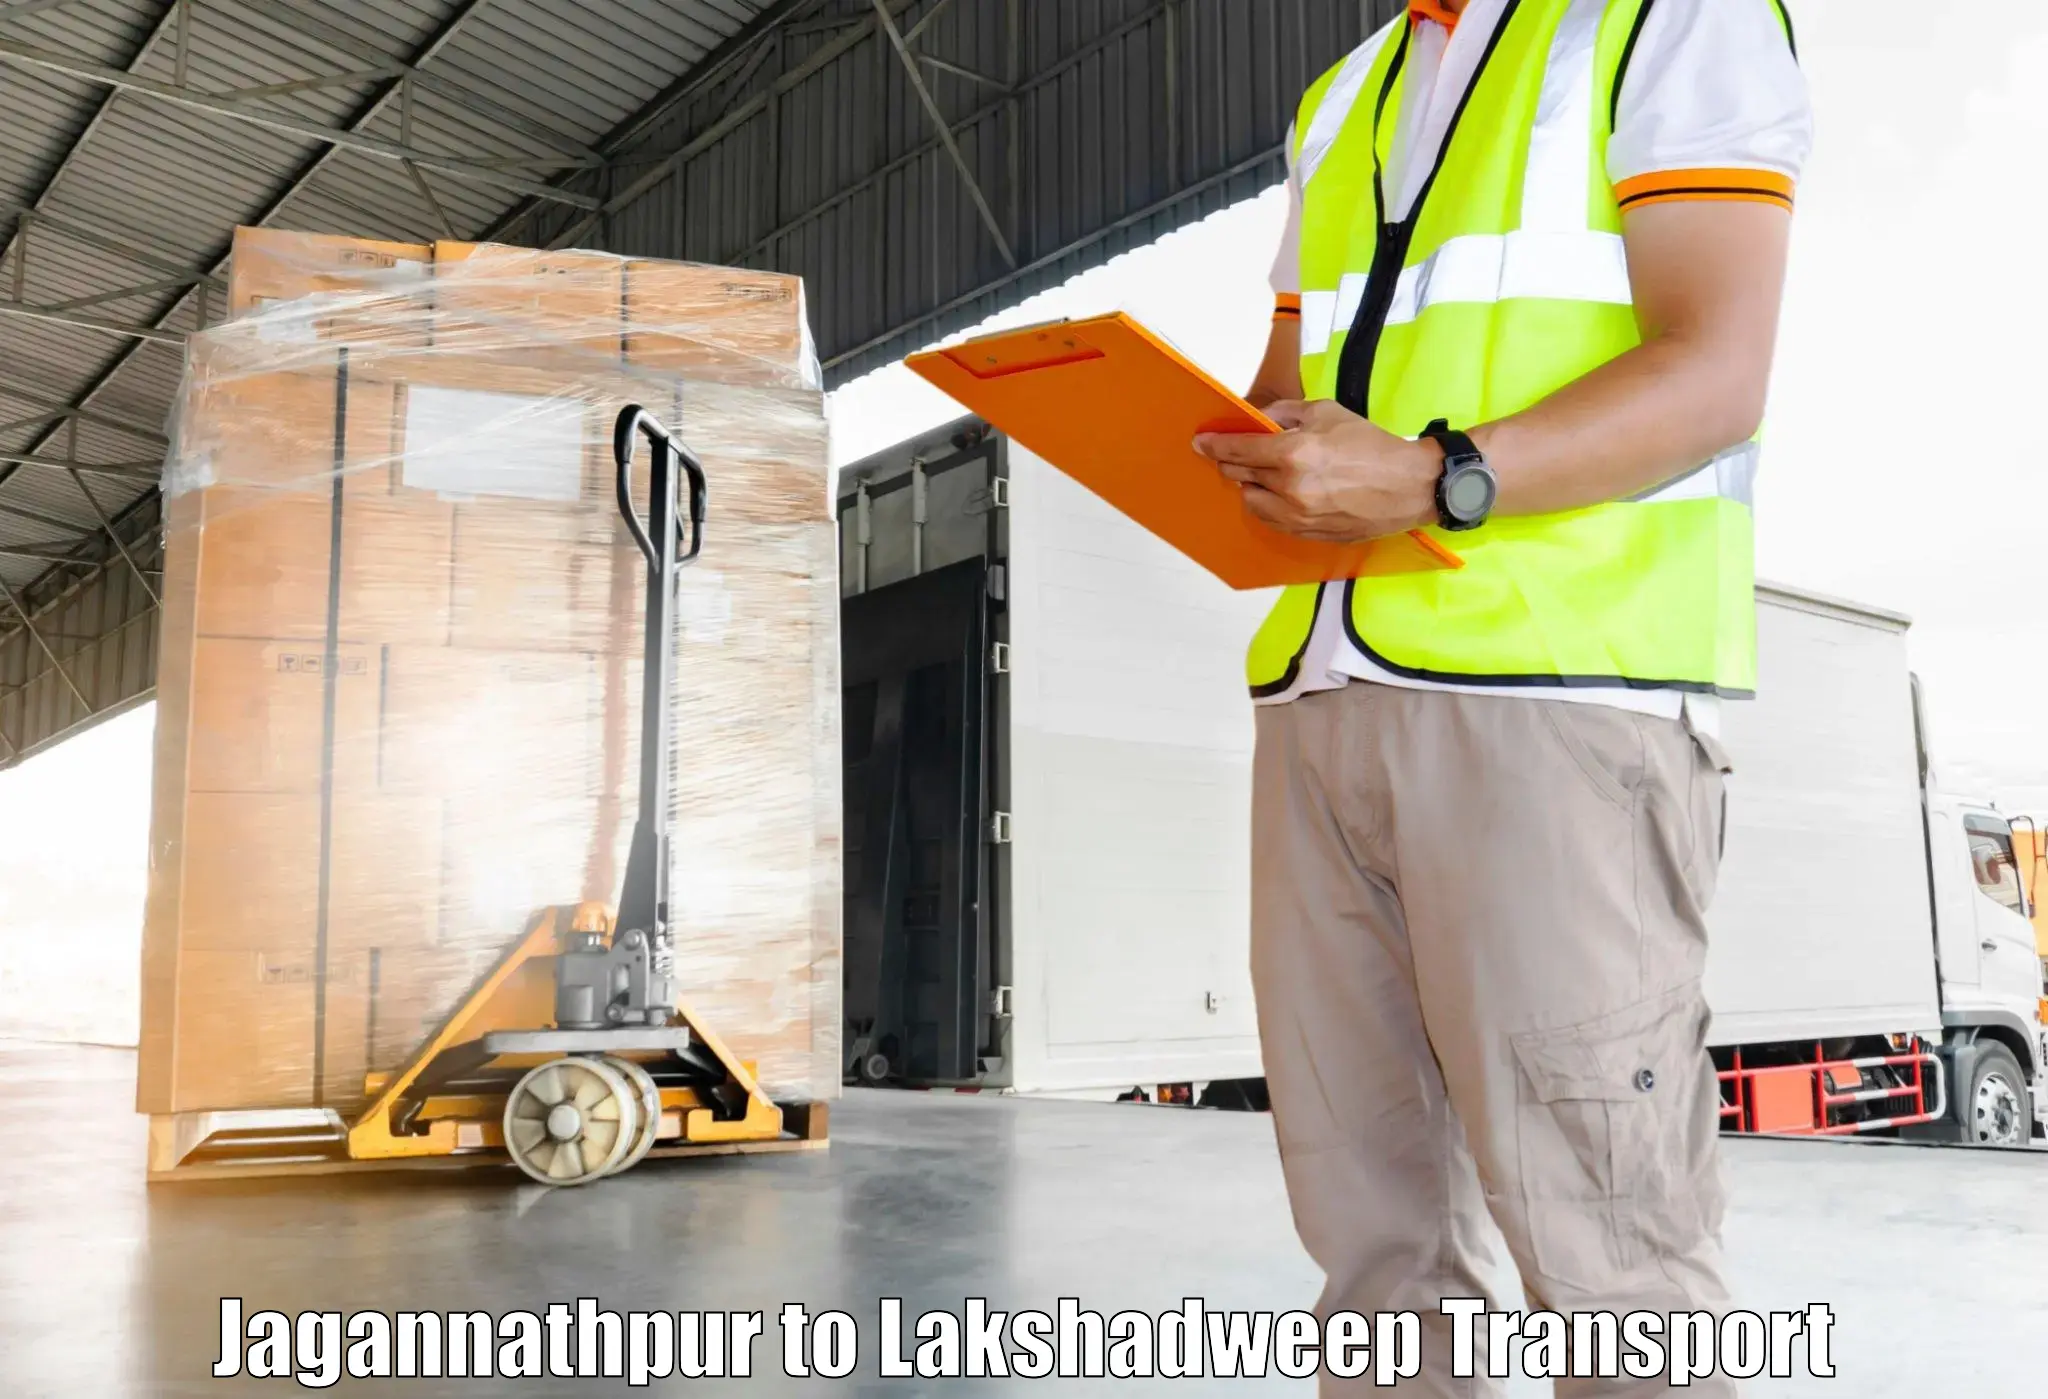 Vehicle transport services Jagannathpur to Lakshadweep